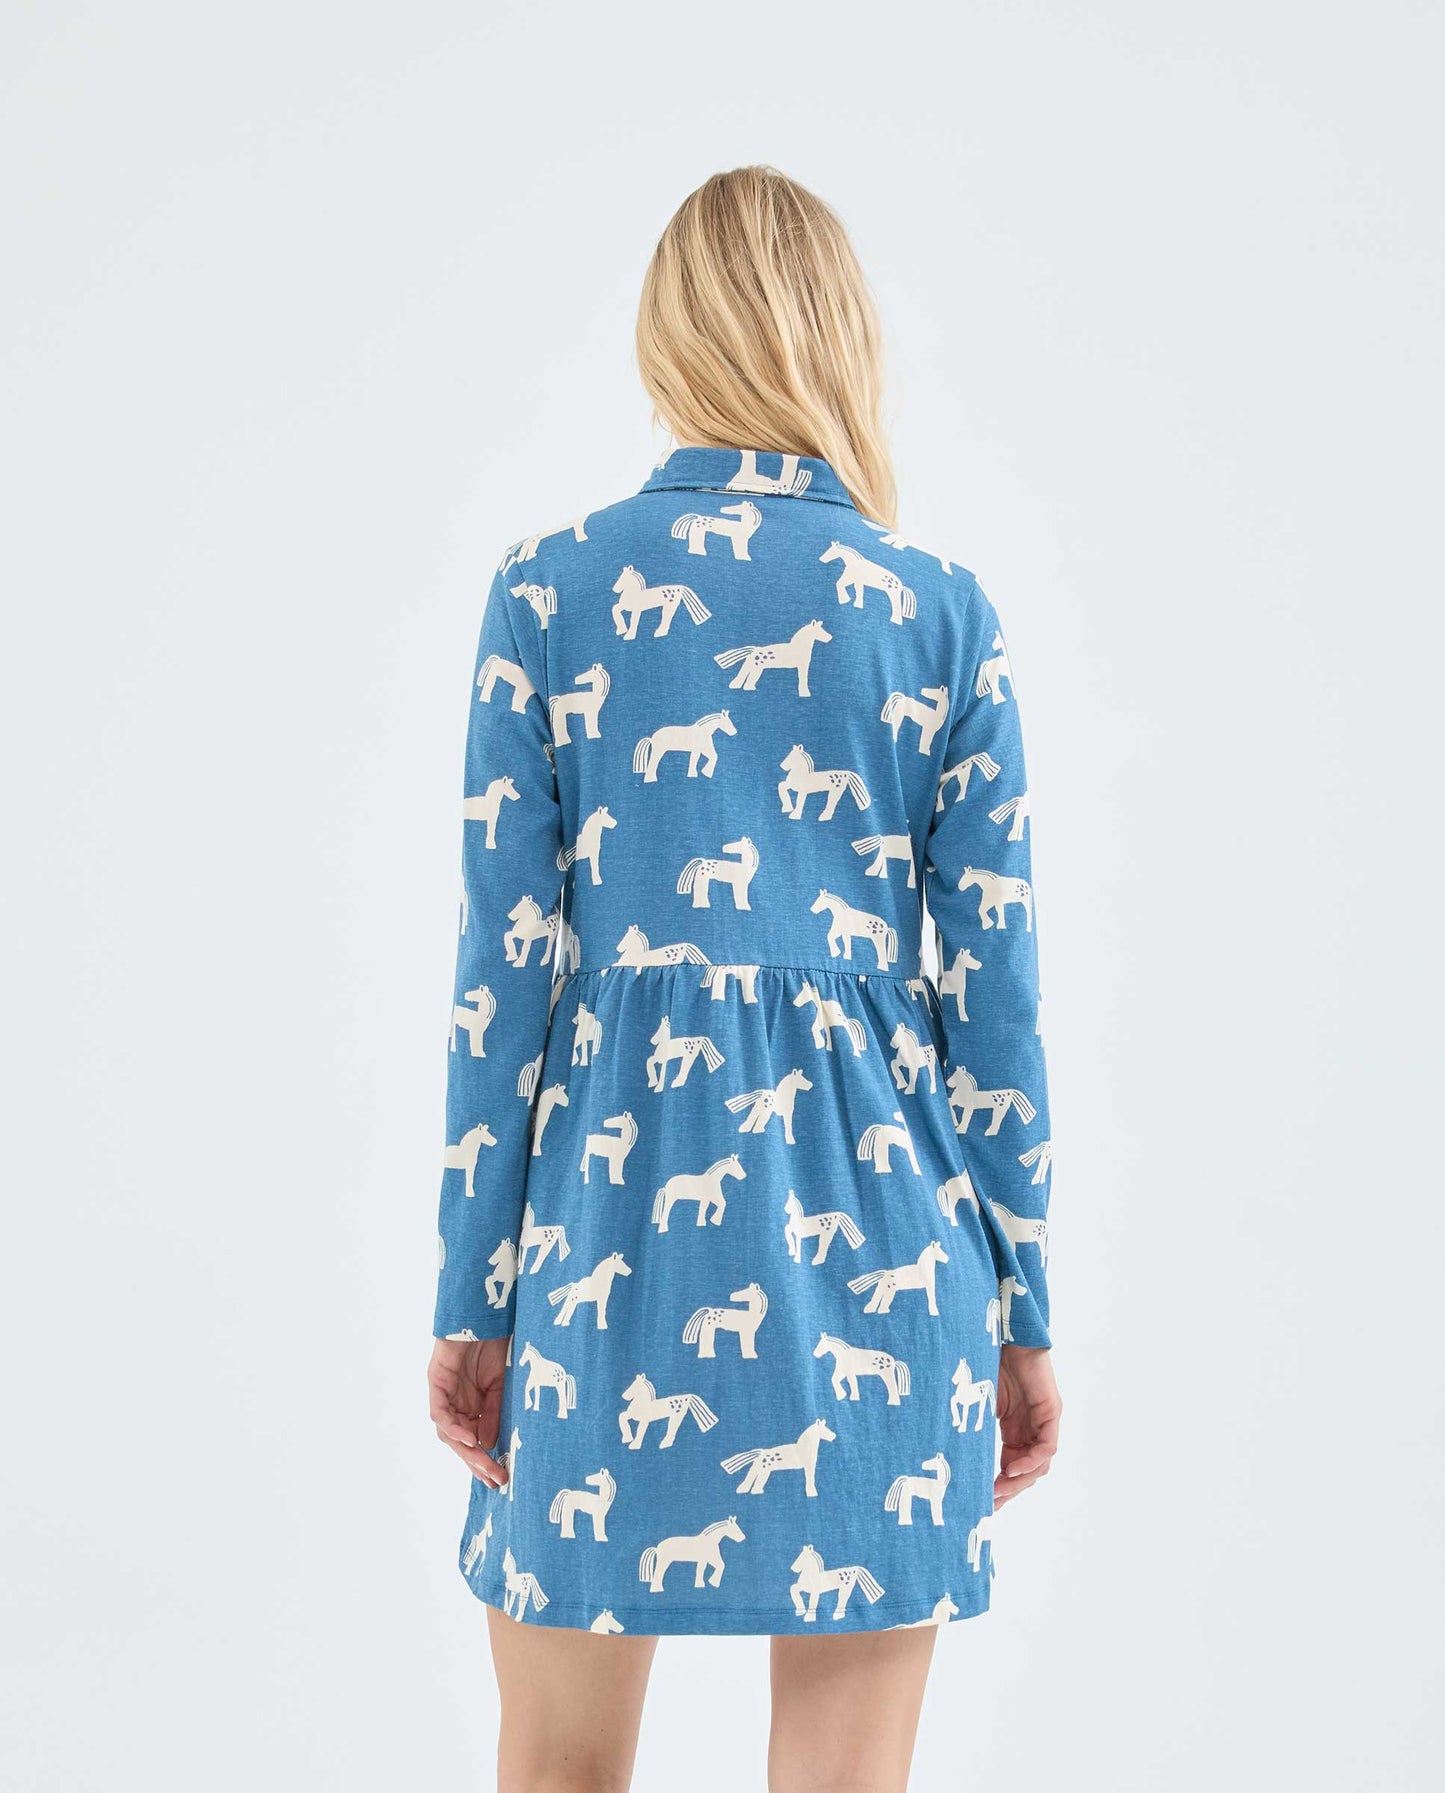 Compañia Fantastica - Jersey Shirt Horse Print Dress